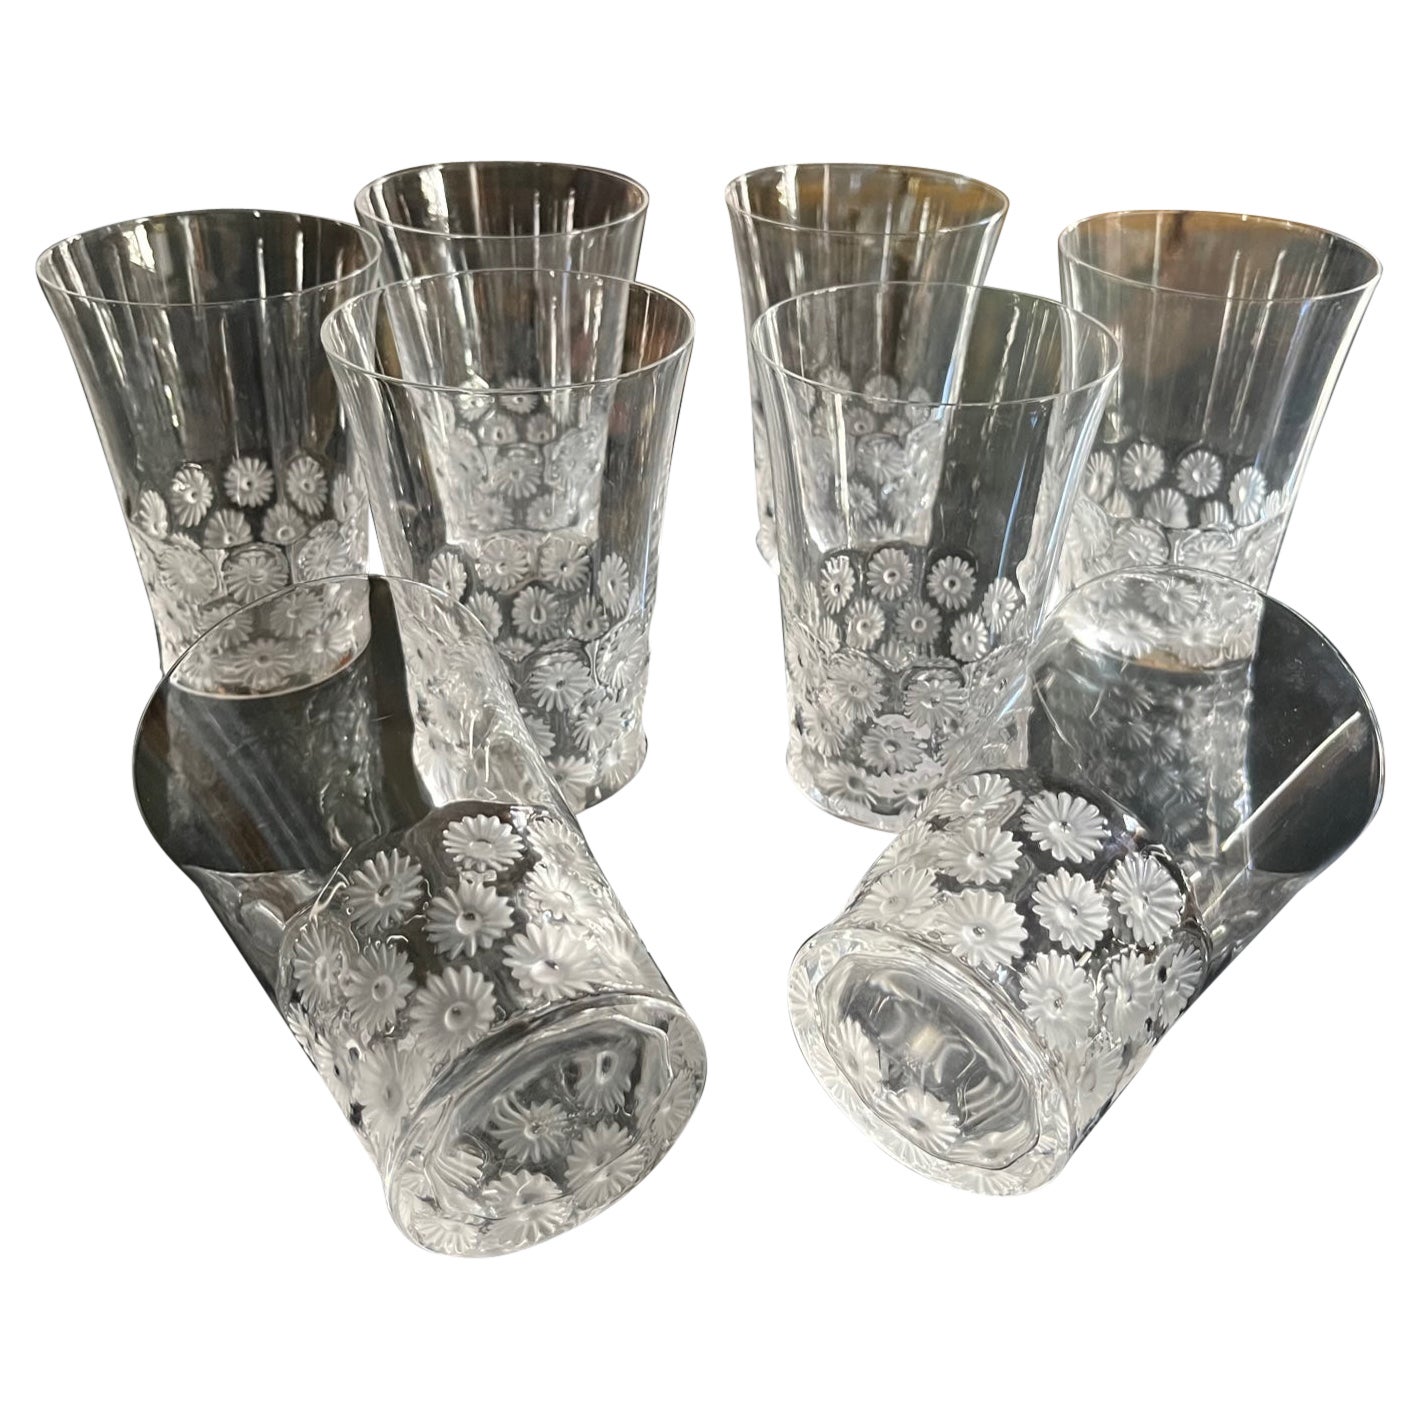 Serie aus Lalique-Kristallglas